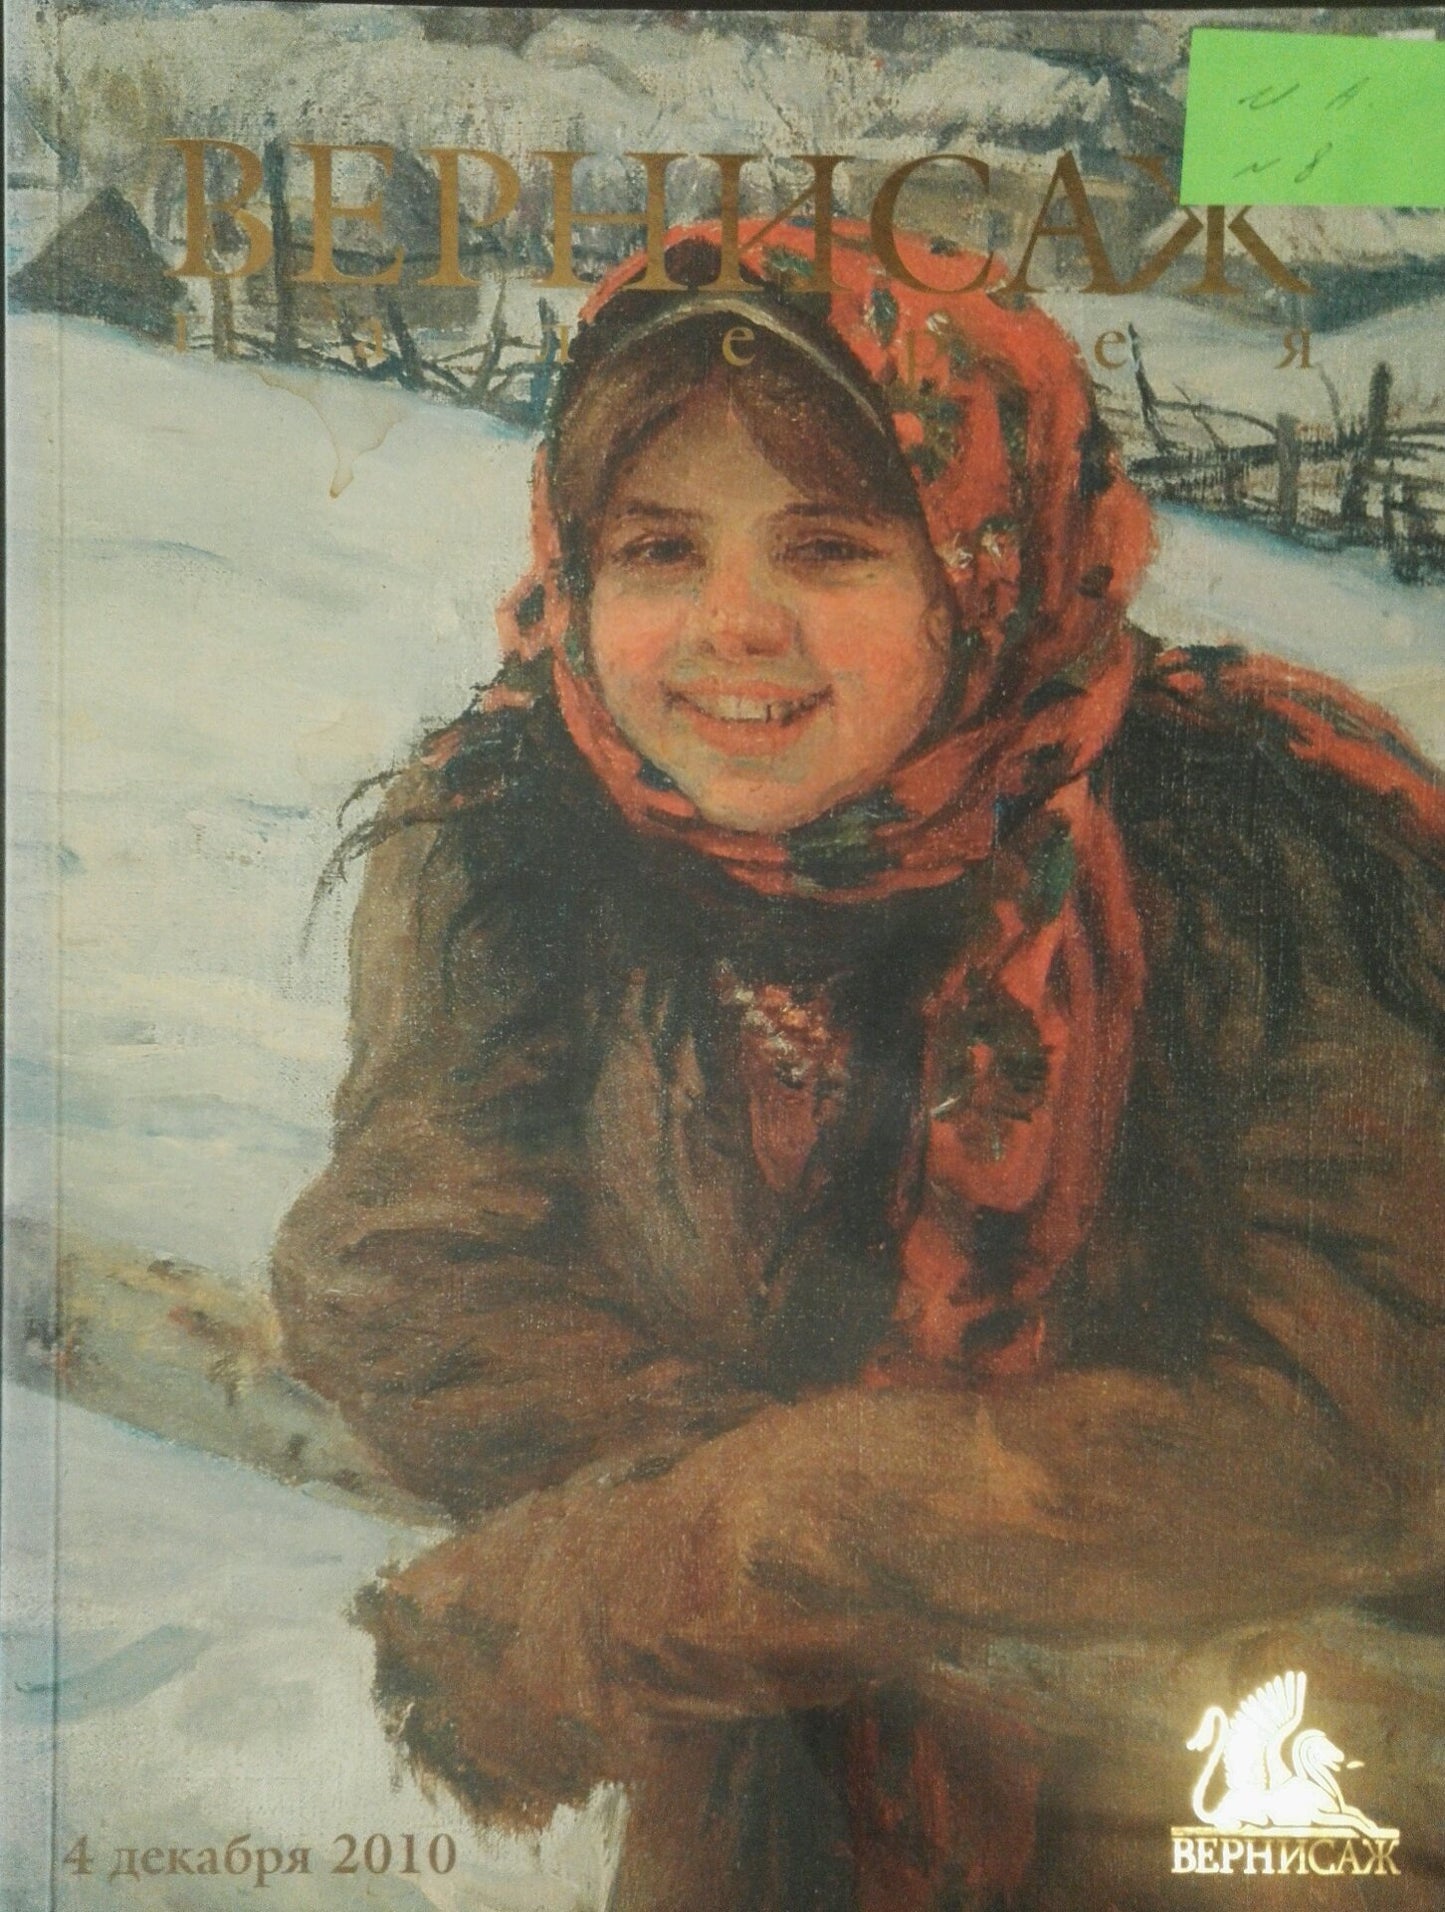 Oil painting Lilac  Anatoly Varvarov